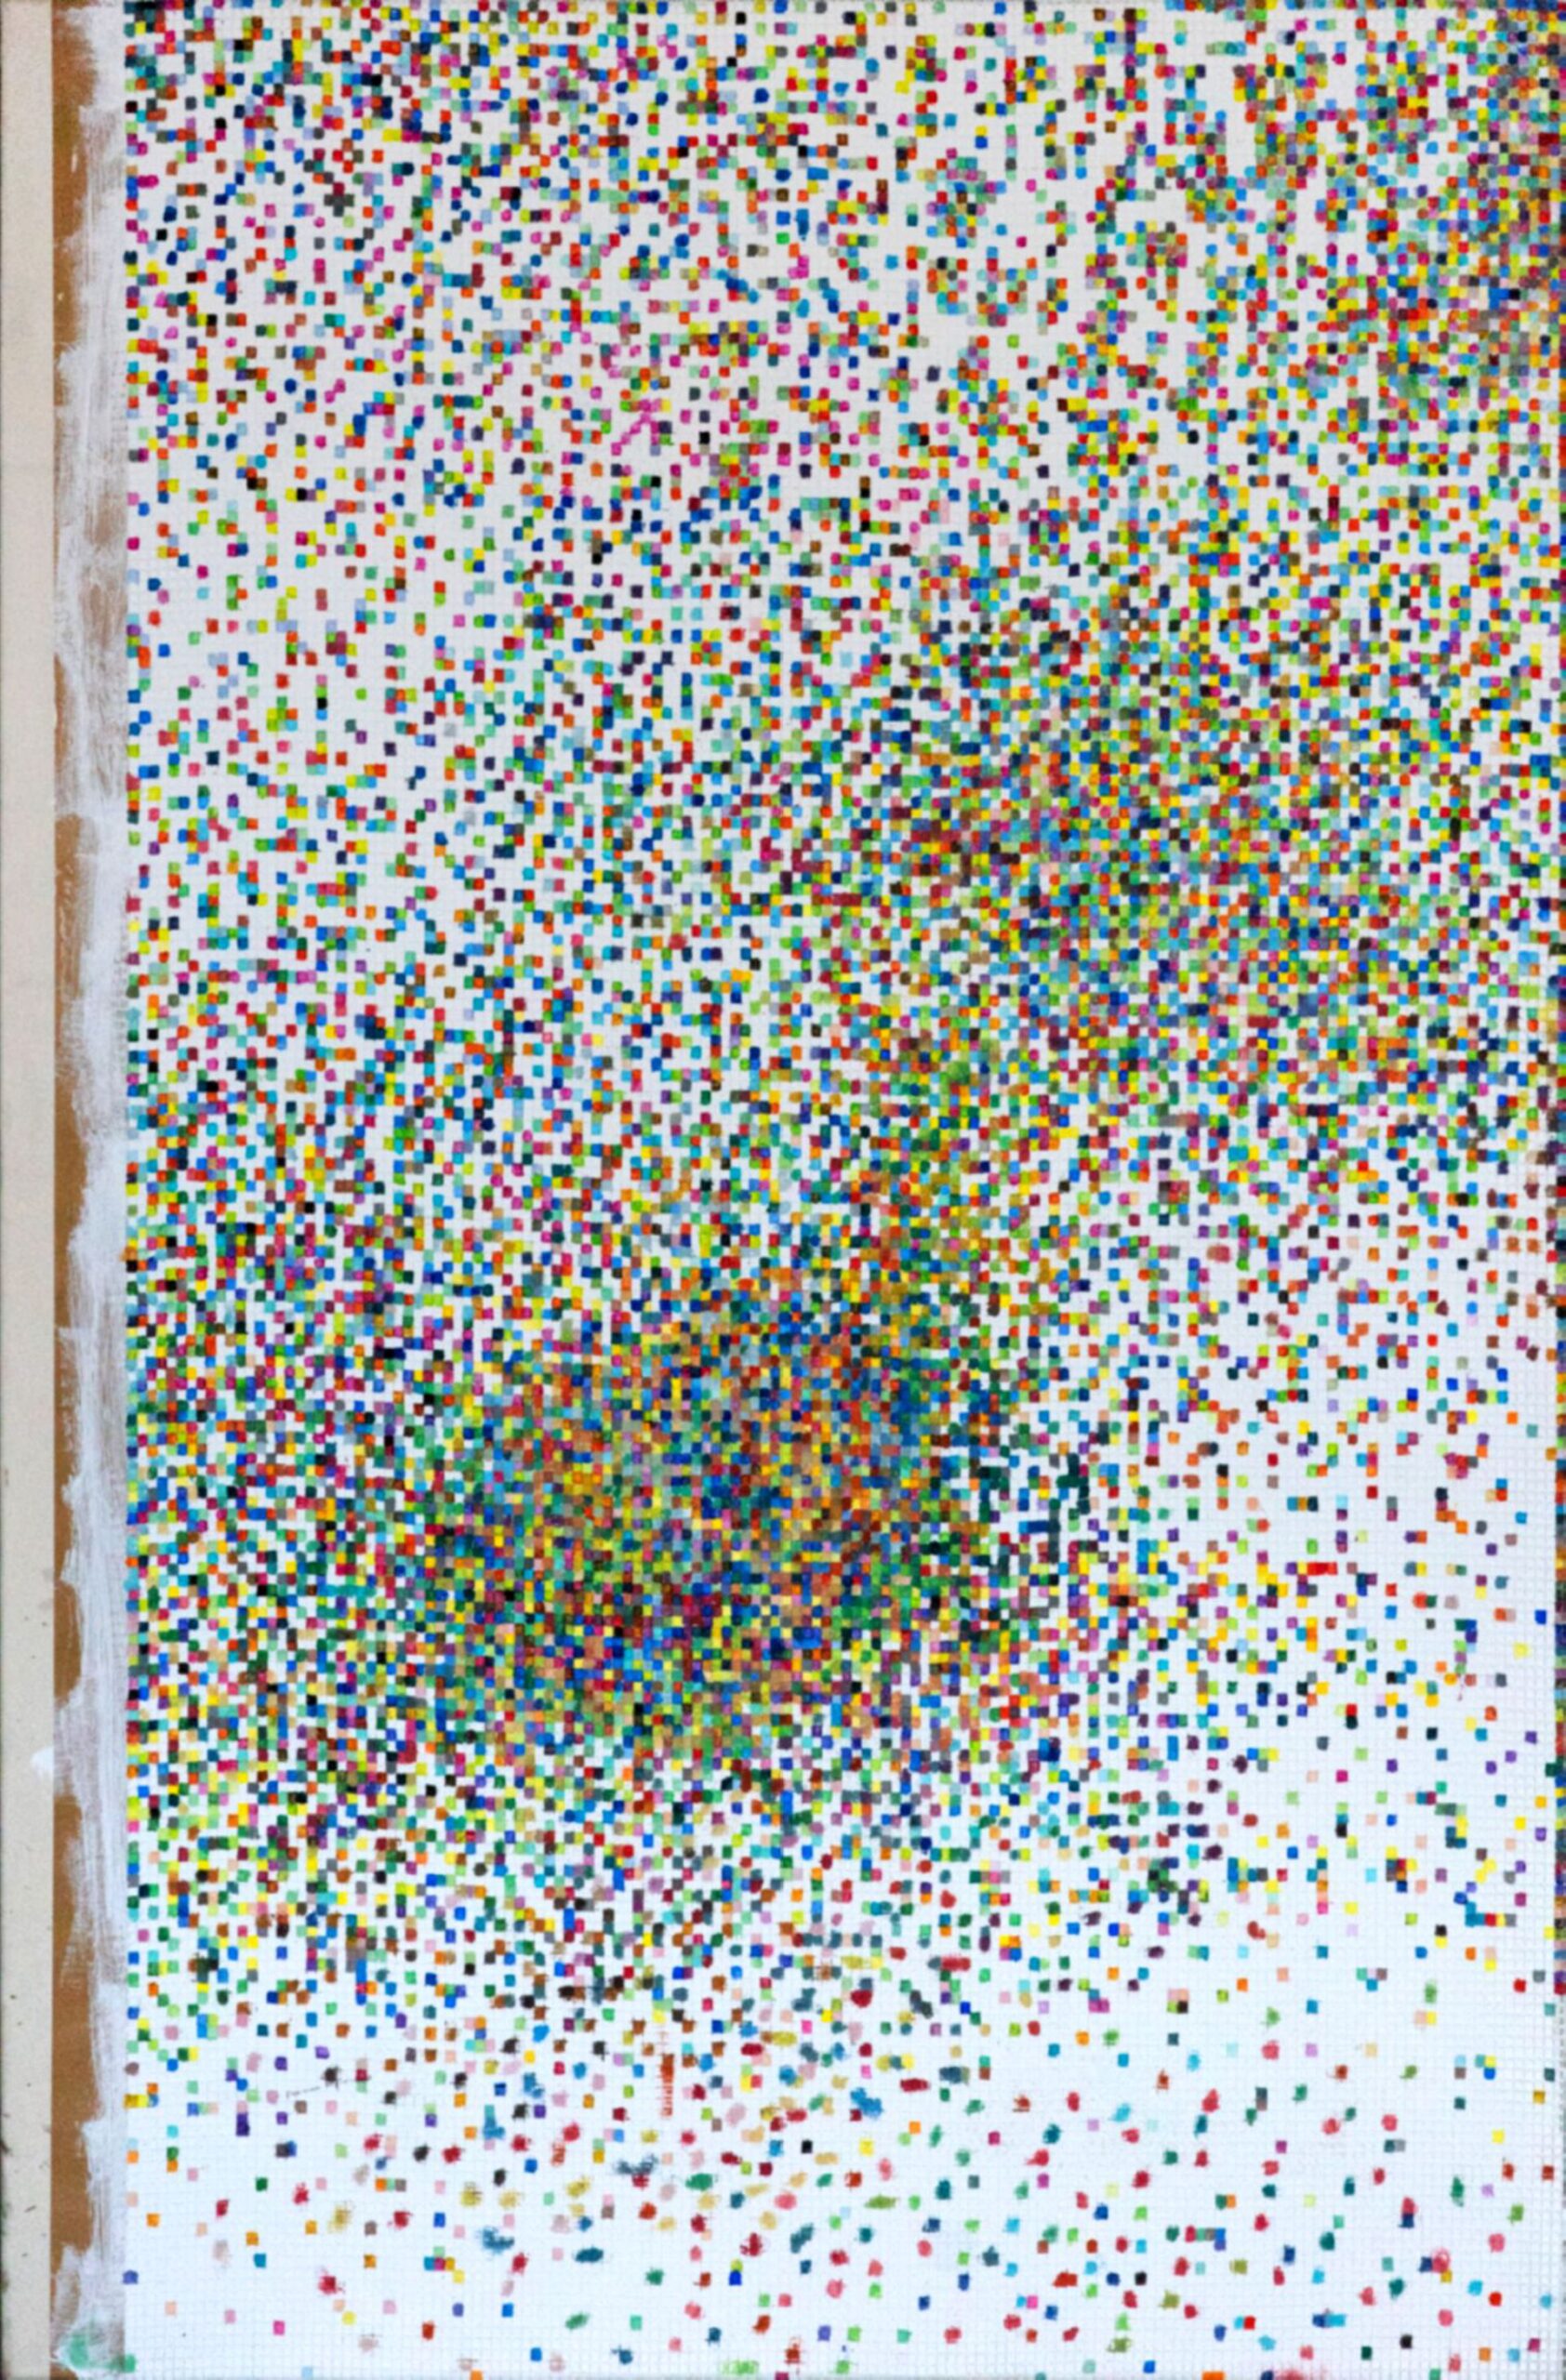 Obraz abstrakcyjny zbudowany z kilkuset kolorowych kwadratów.